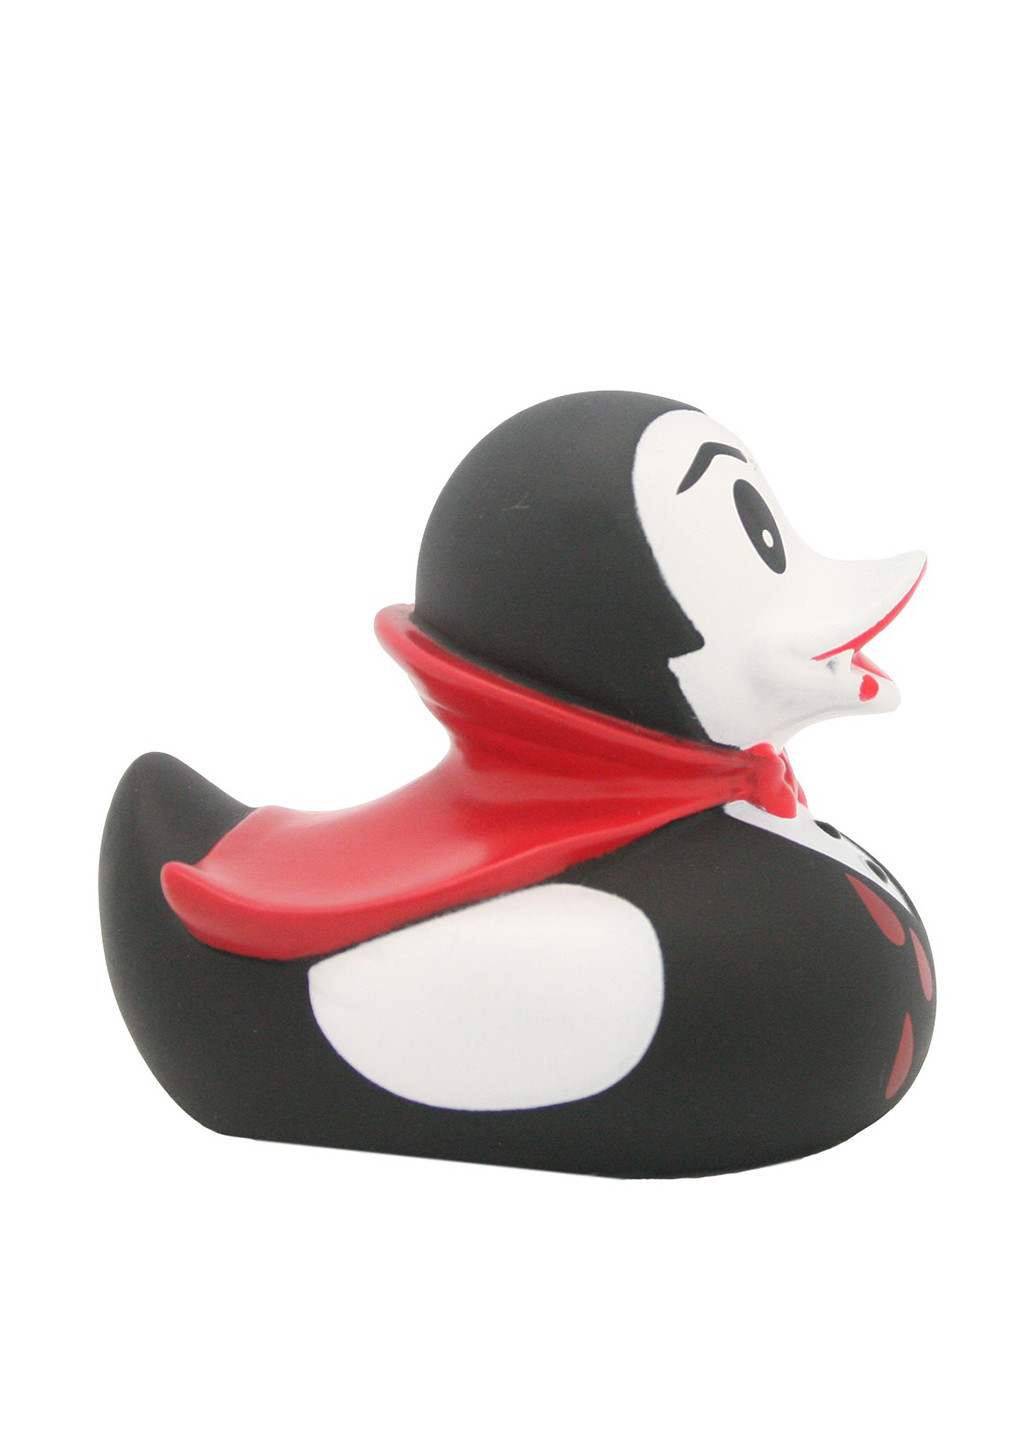 Іграшка для купання Качка Дракула, 8,5x8,5x7,5 см Funny Ducks (250618780)